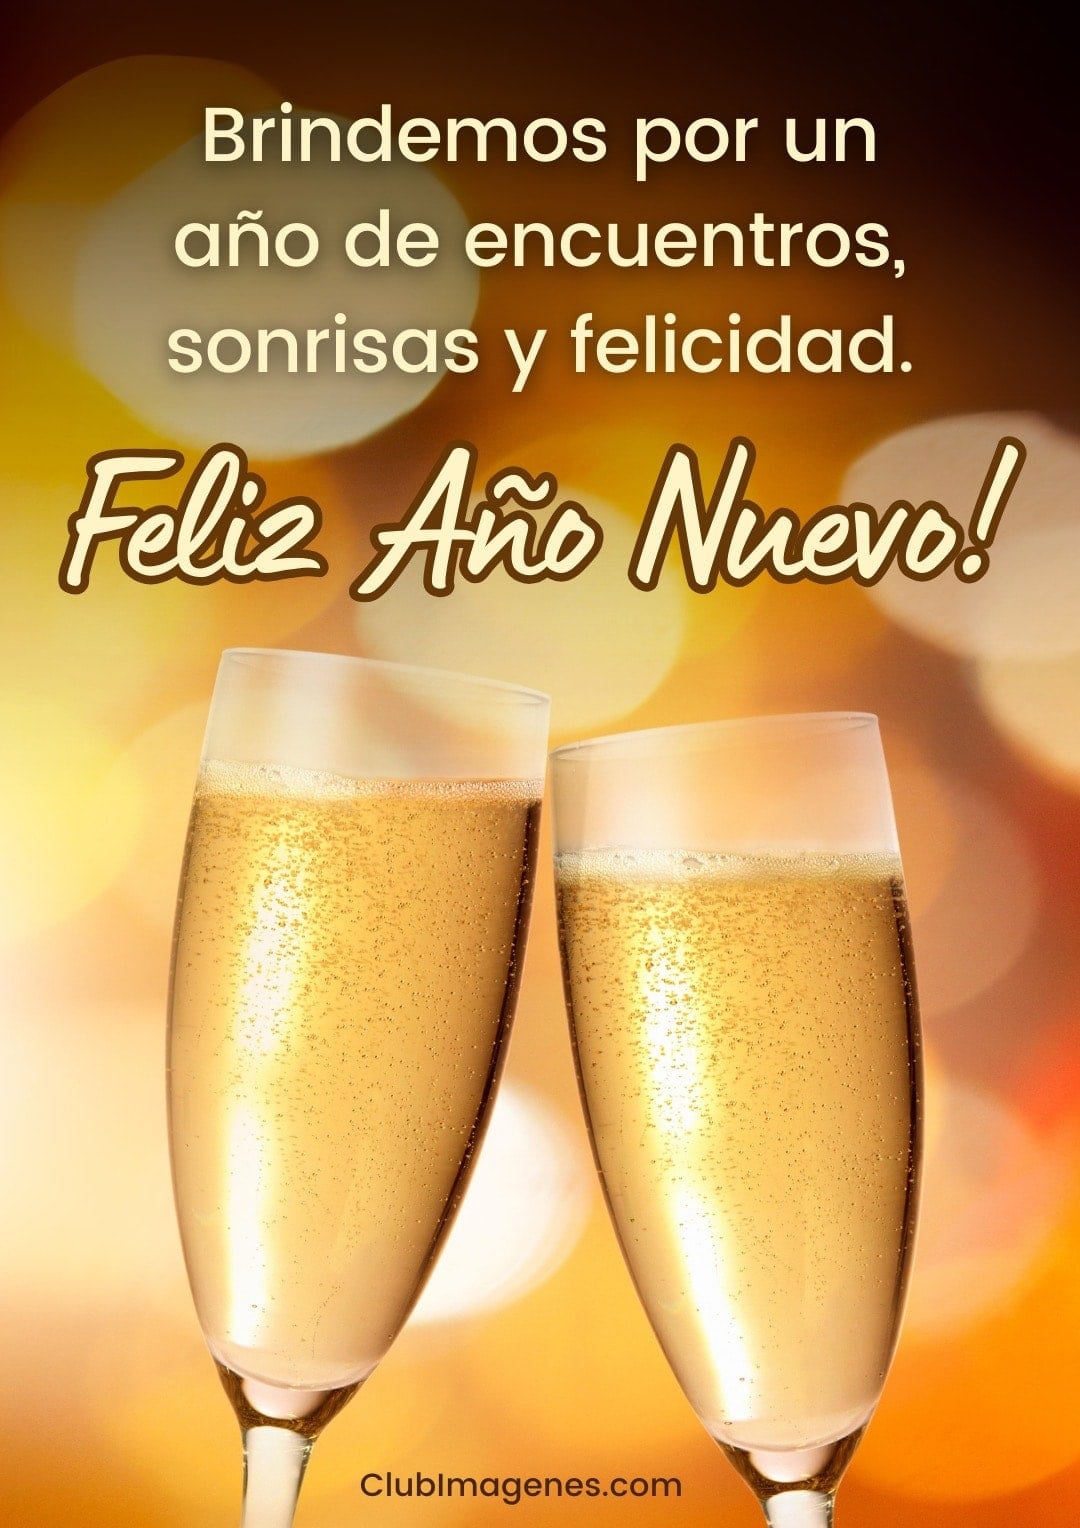 Dos copas de champán brindando con el mensaje: Brindemos por un año de encuentros, sonrisas y felicidad. Feliz Año Nuevo!